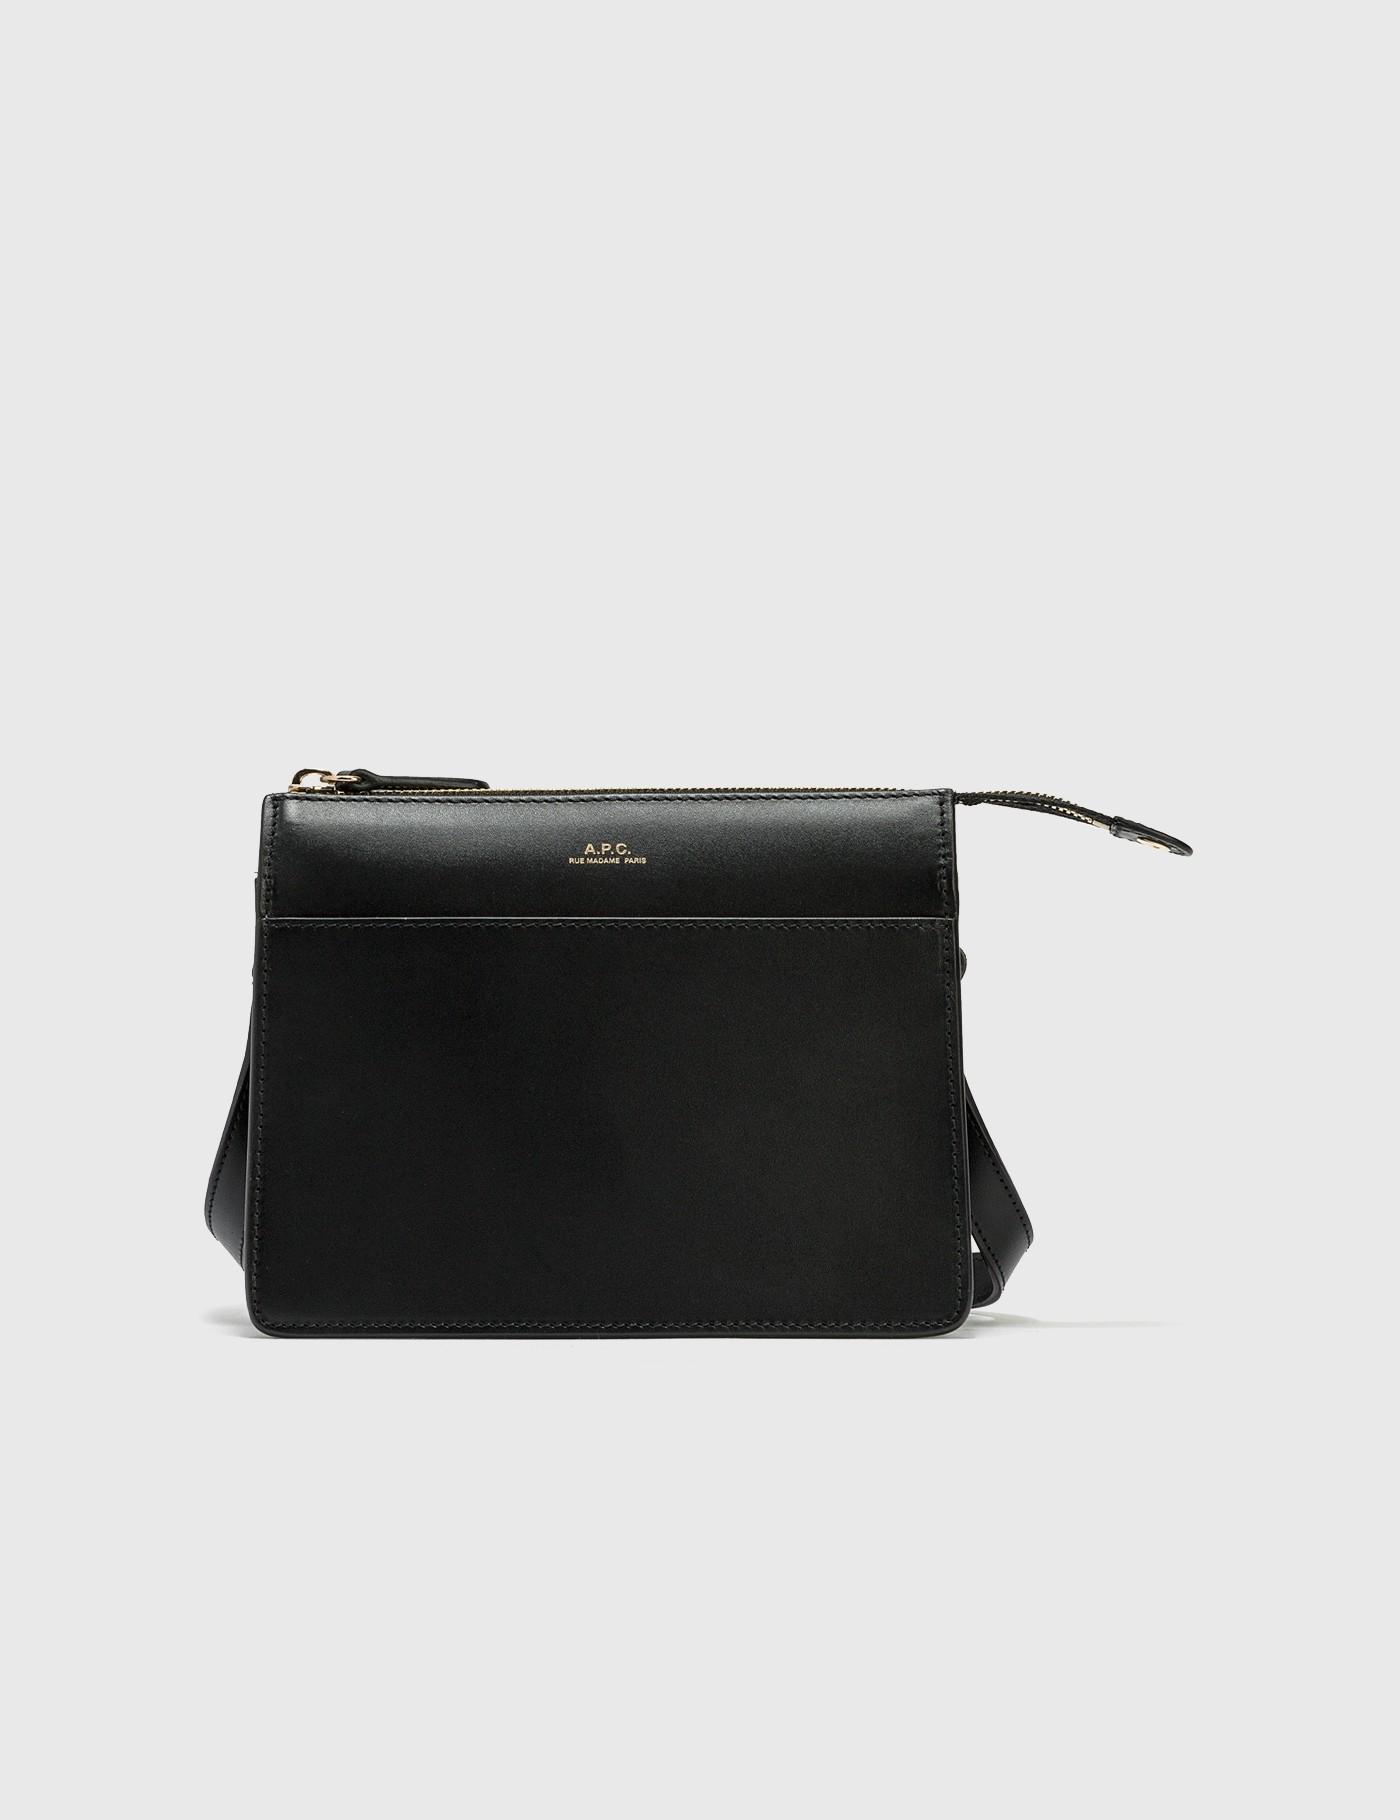 A.P.C. Leather Ella Mini Bag in Black - Lyst